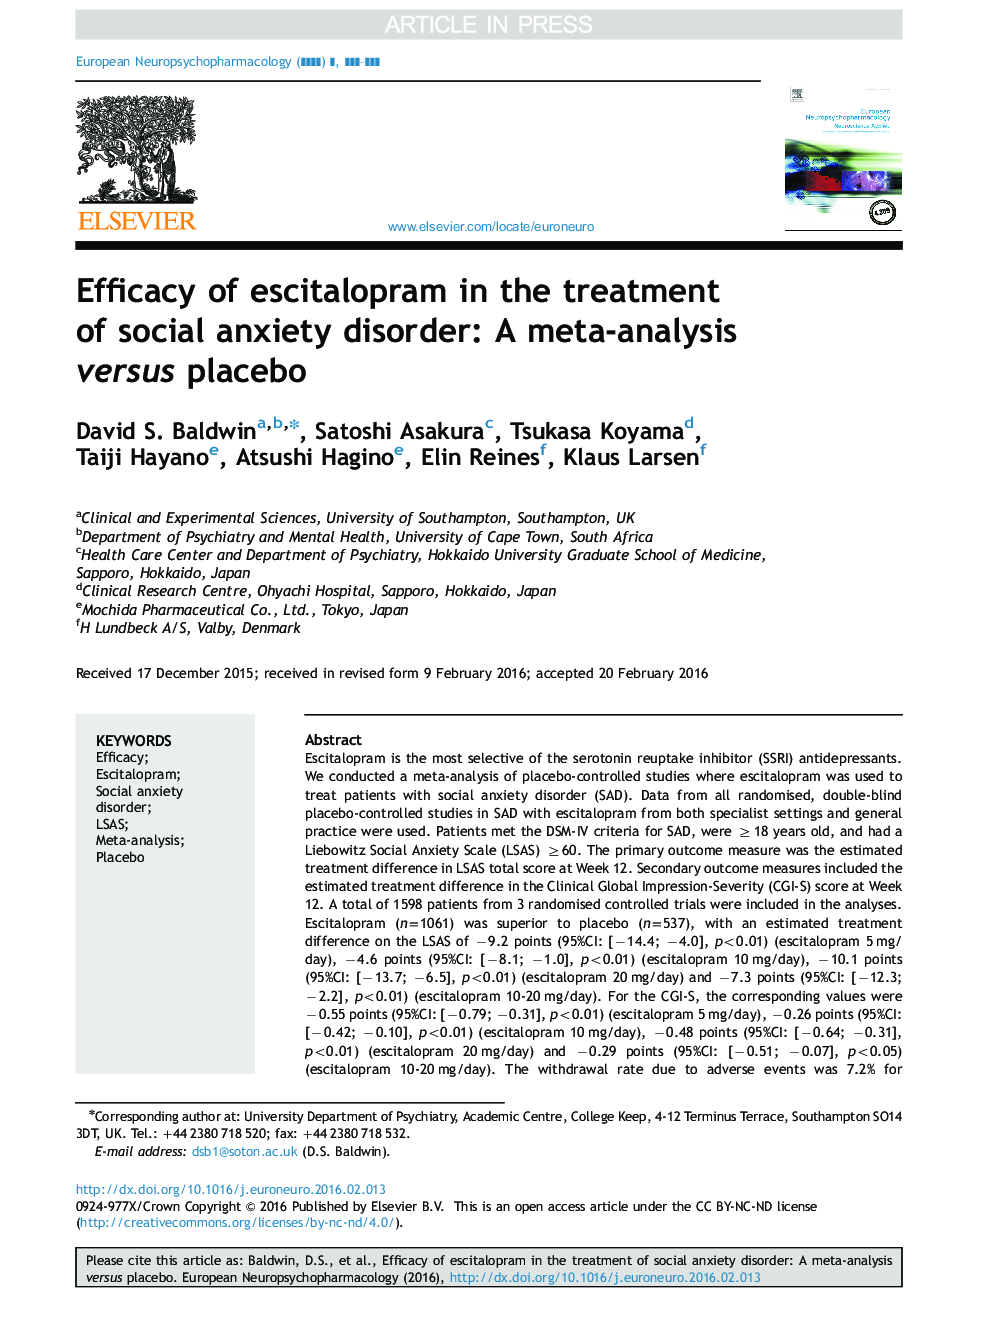 اثربخشی اسکلیتوپام در درمان اختلال اضطراب اجتماعی: یک متاآنالیز در مقابل پلاسبو 